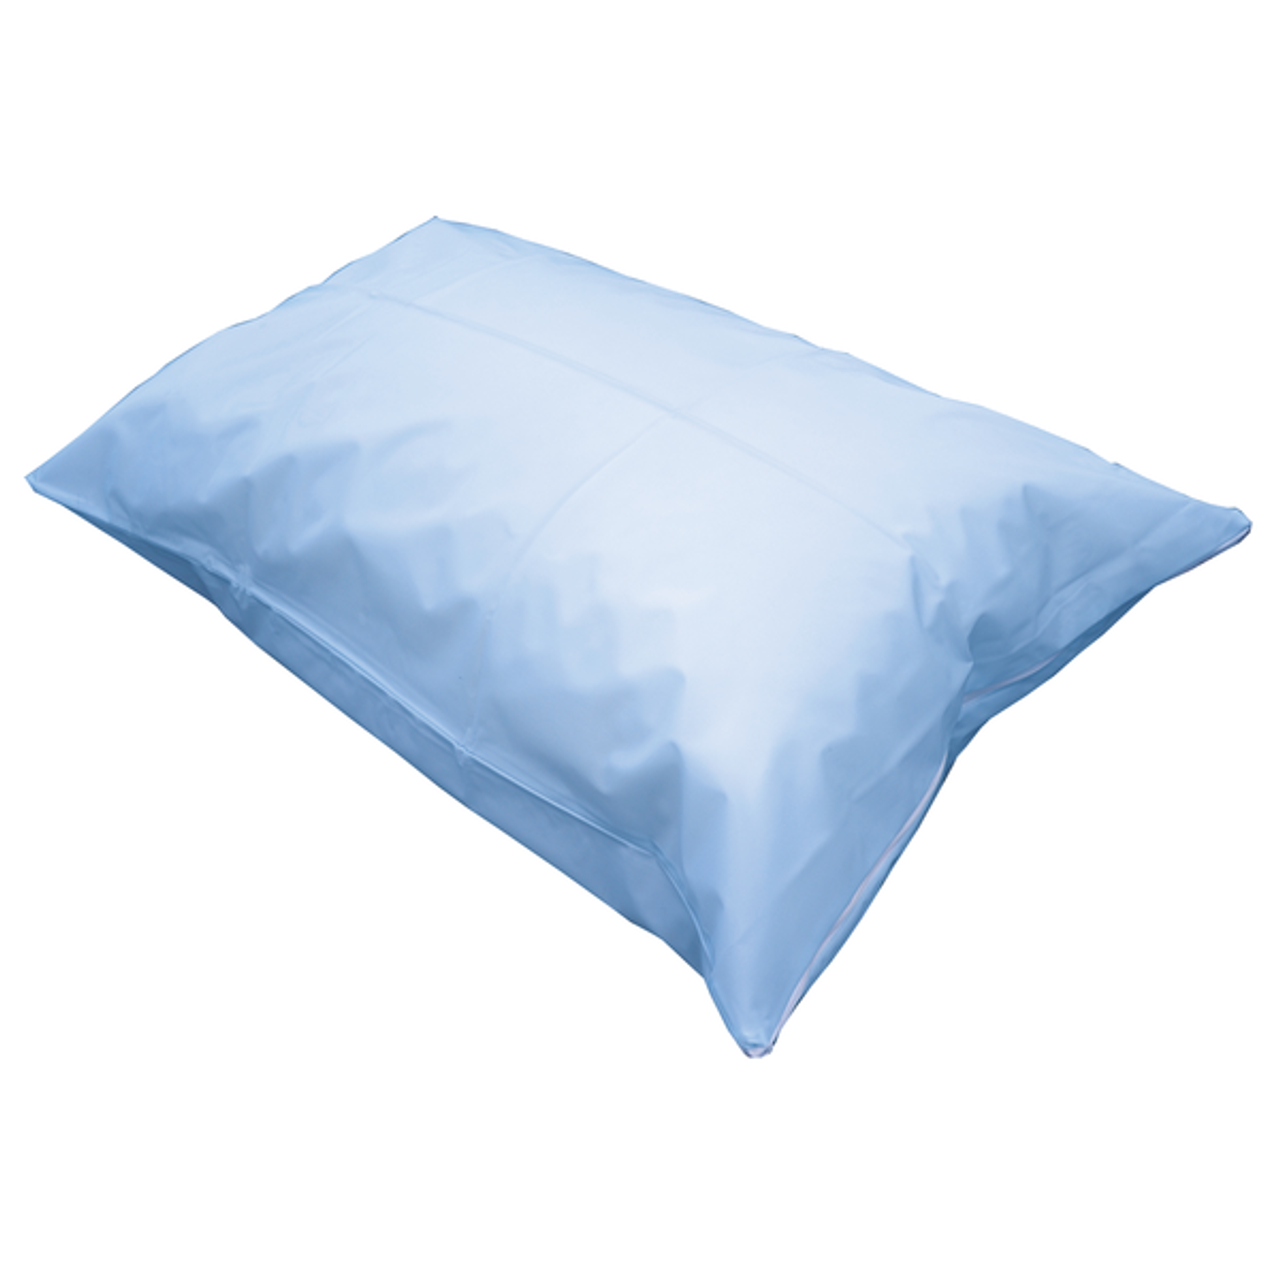 Pillow Case Blue Zip